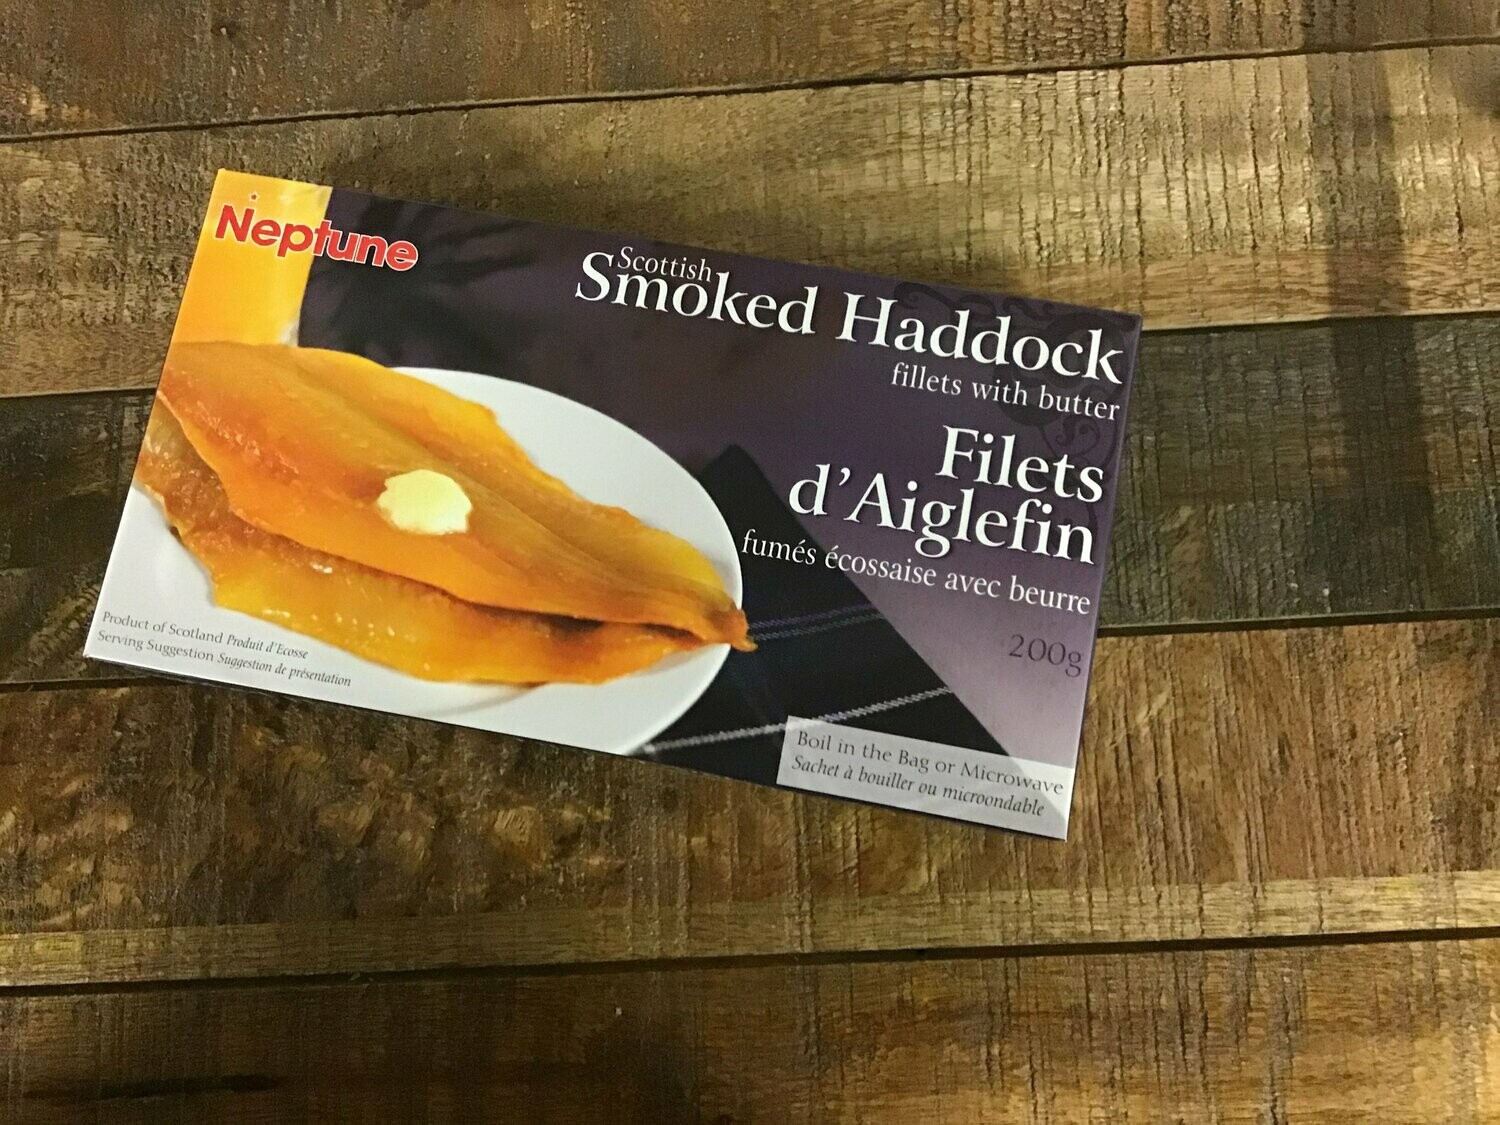 Scottish Smoked Haddock